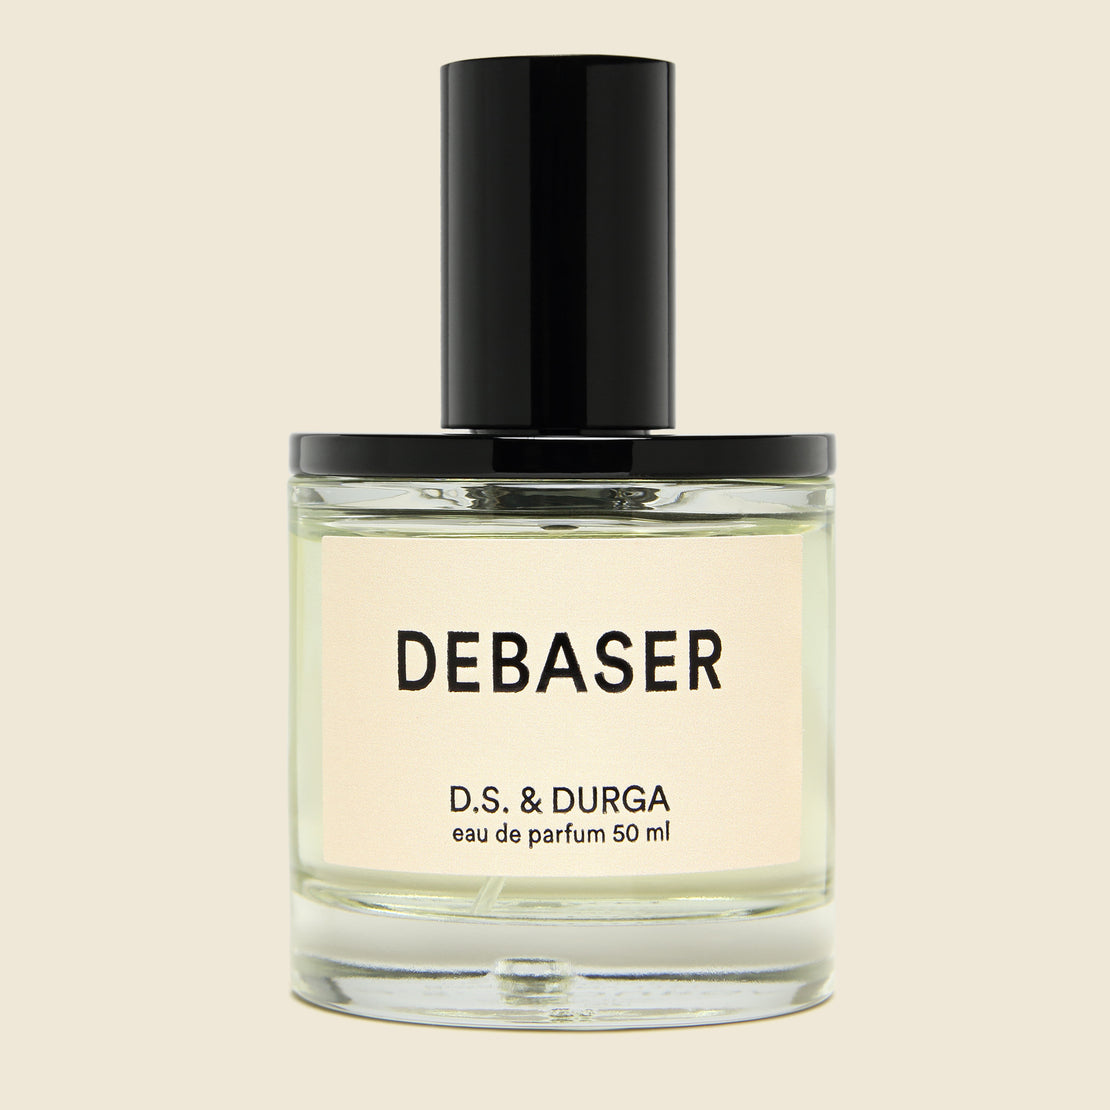 Debaser Eau de Parfum - D.S. & Durga - STAG Provisions - Home - Chemist - Cologne